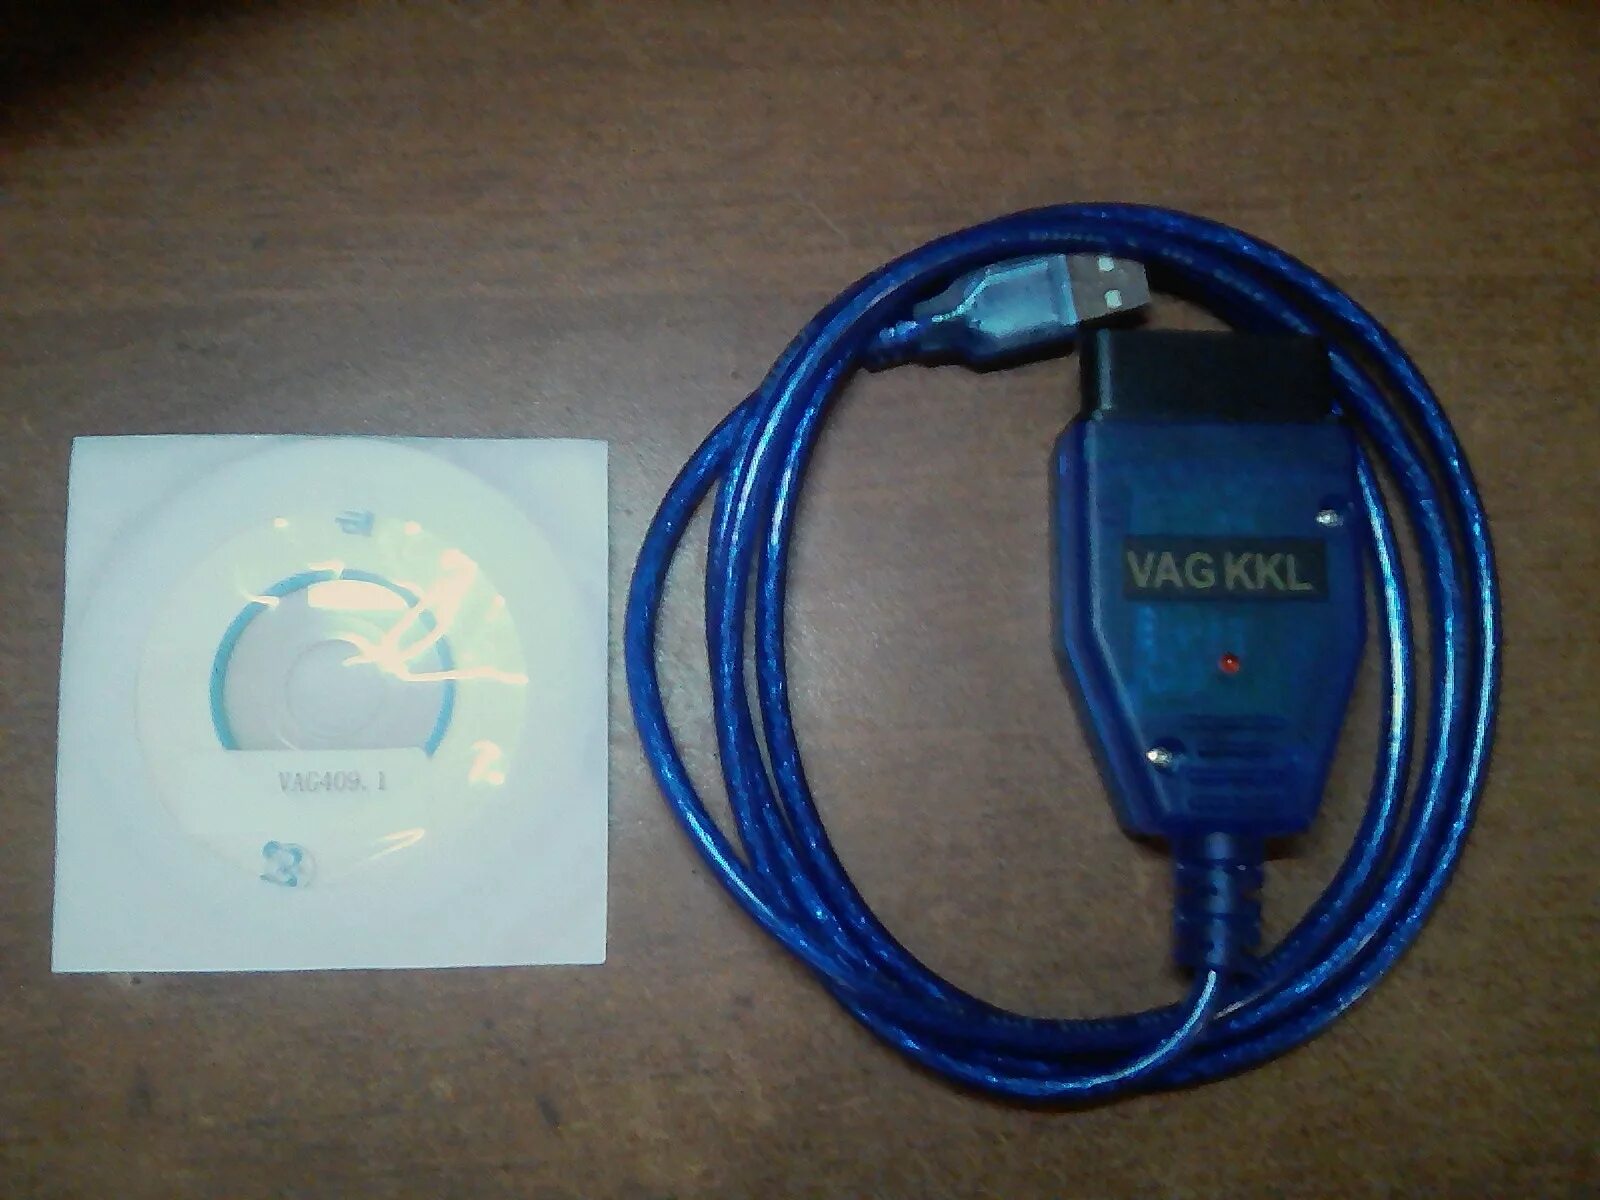 Диагностический кабель для Дэу Нексия n100. KKL VAG-com for 409.1. Адаптер сканер ошибок Део Нексия 2010 года. Диагностический разъем Daewoo Nexia.